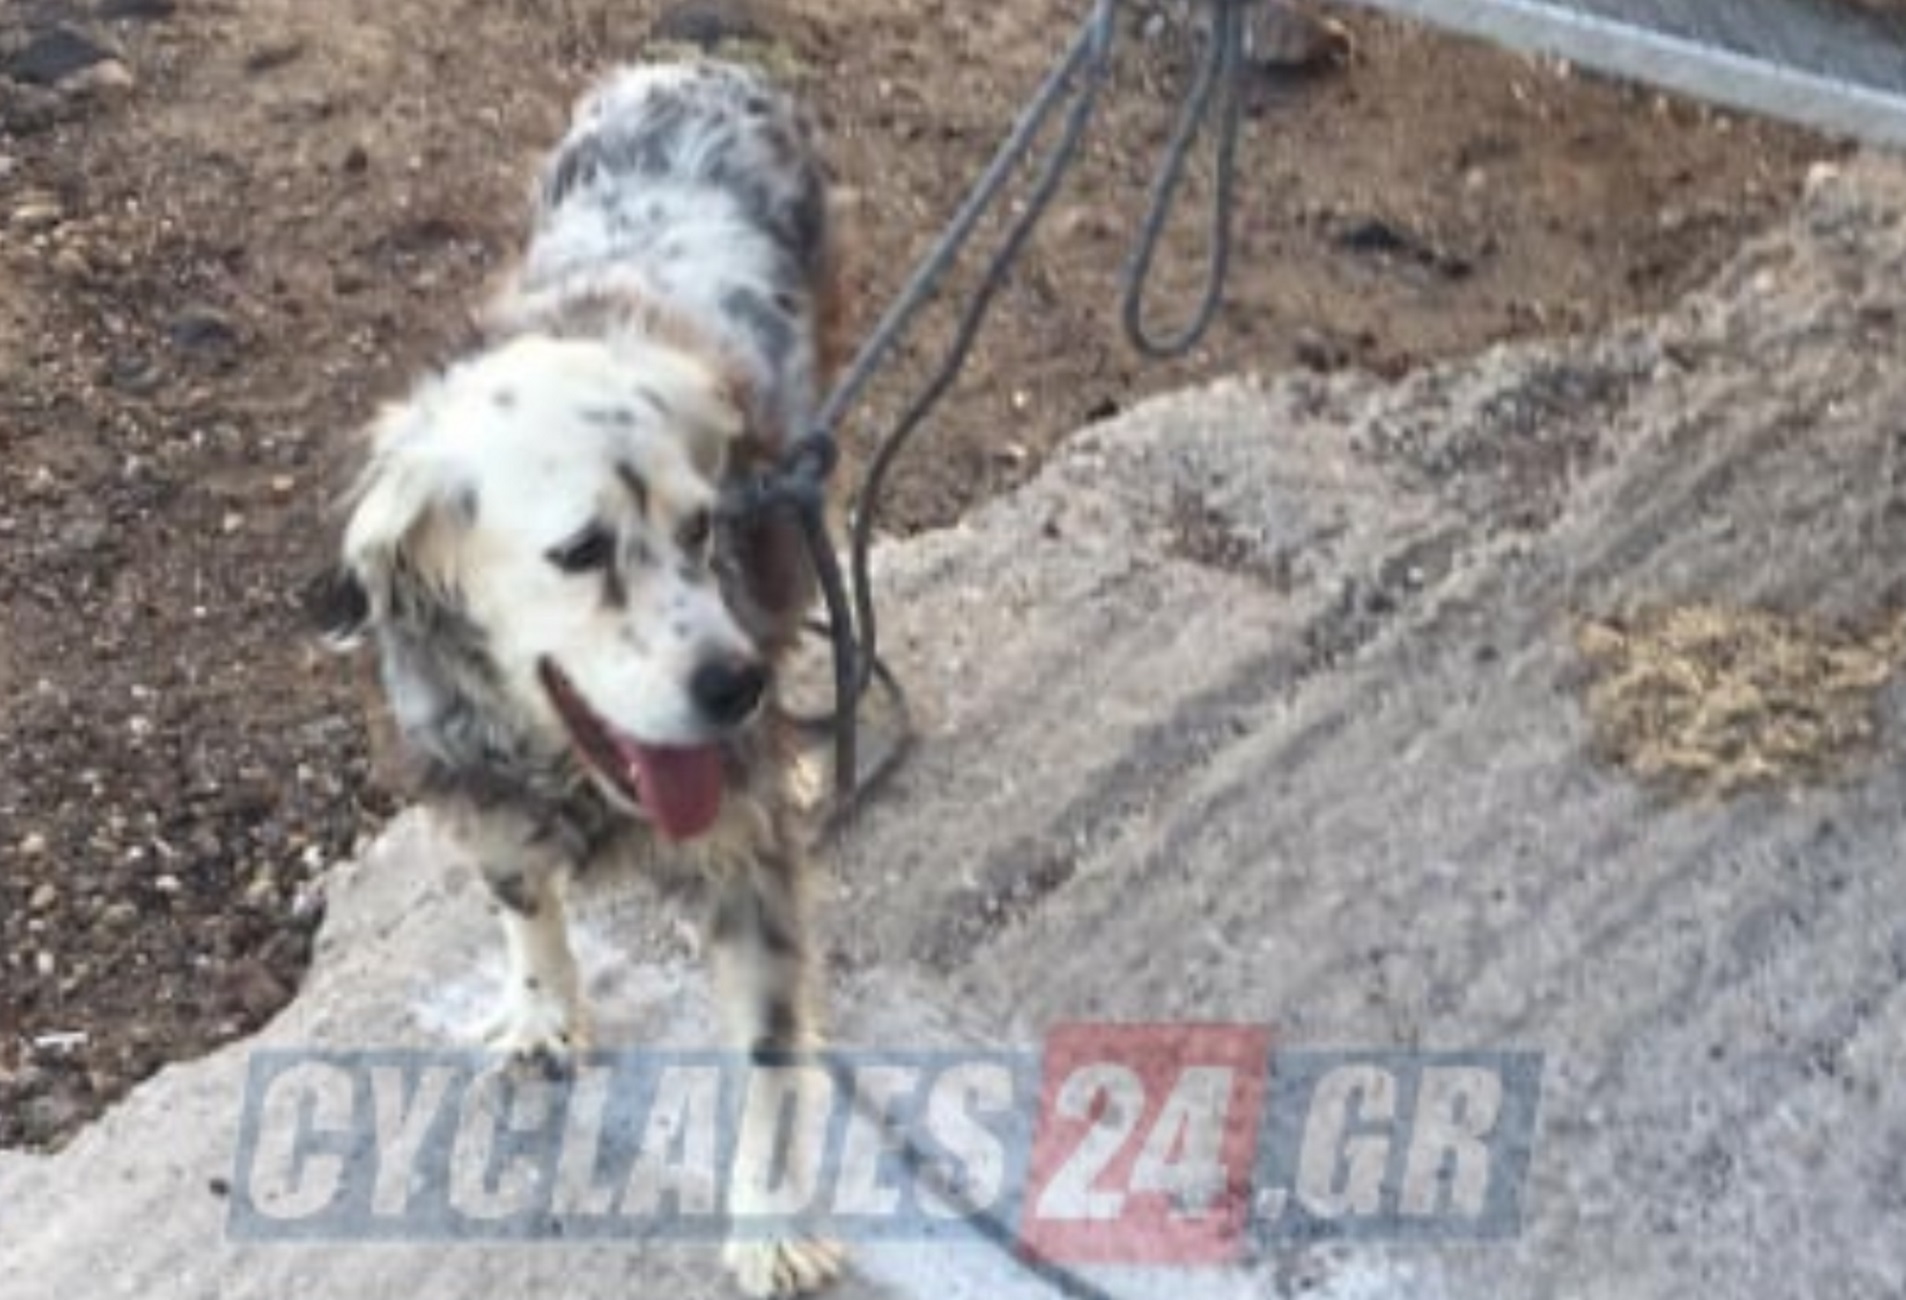 Σαντορίνη: Συγκινητική διάσωση σκύλου στην «Κόκκινη παραλία» – Η επέμβαση των πυροσβεστών